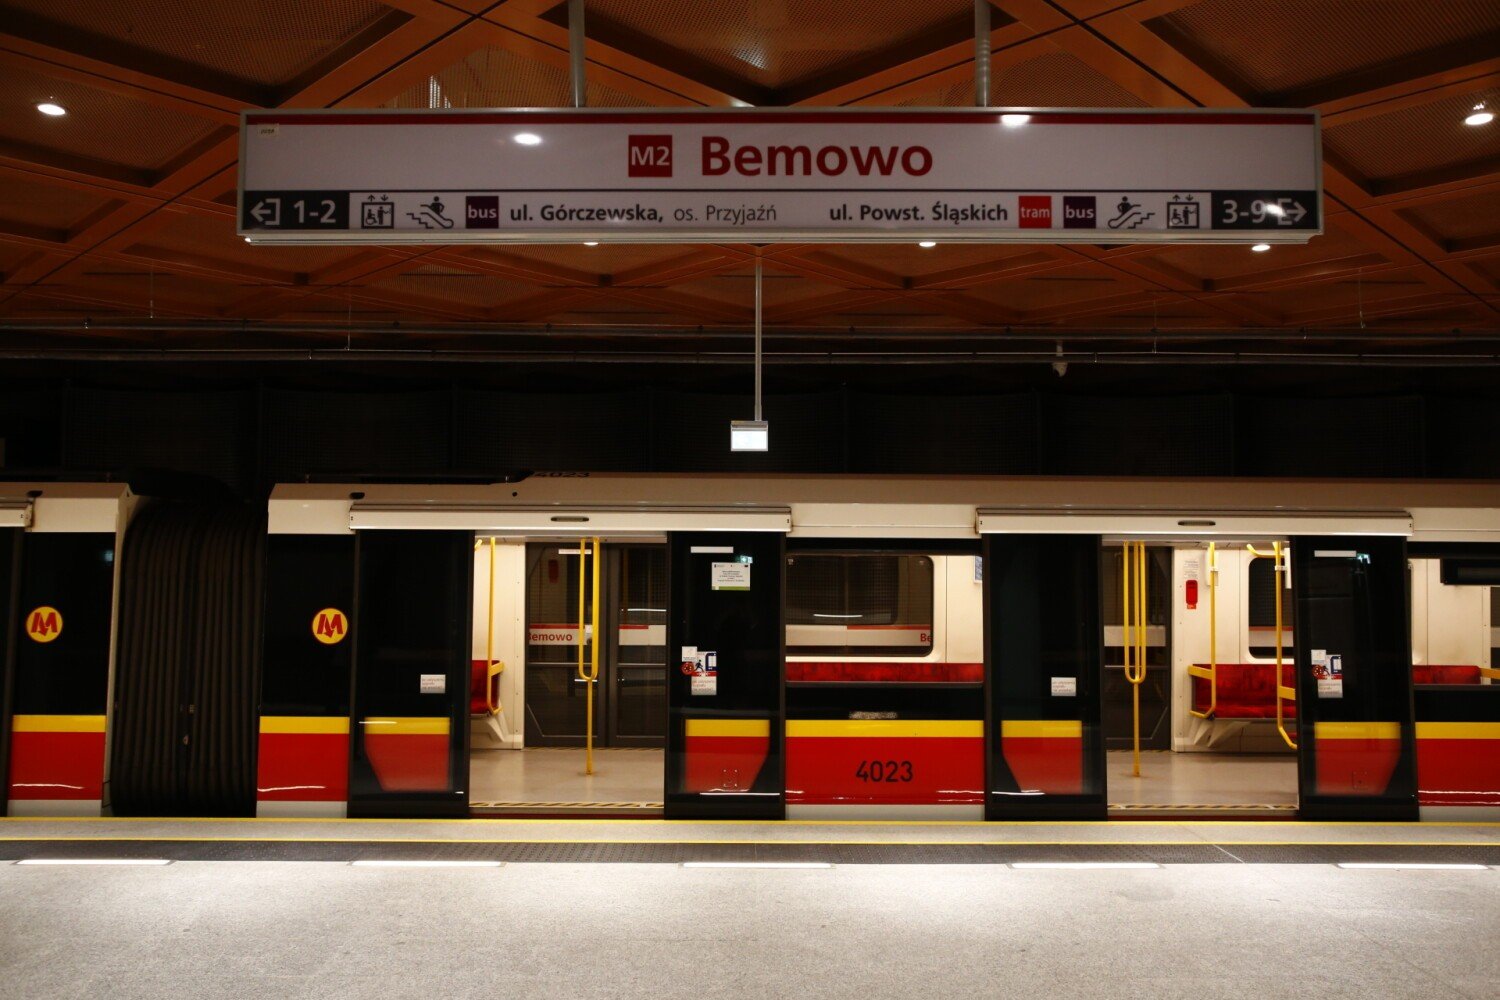 Druga linia metra w Warszawie. Otwarto dwie nowe stacje: Ulrychów i Bemowo.  Rzutem na taśmę uzyskano wszystkie zgody | Warszawa Nasze Miasto